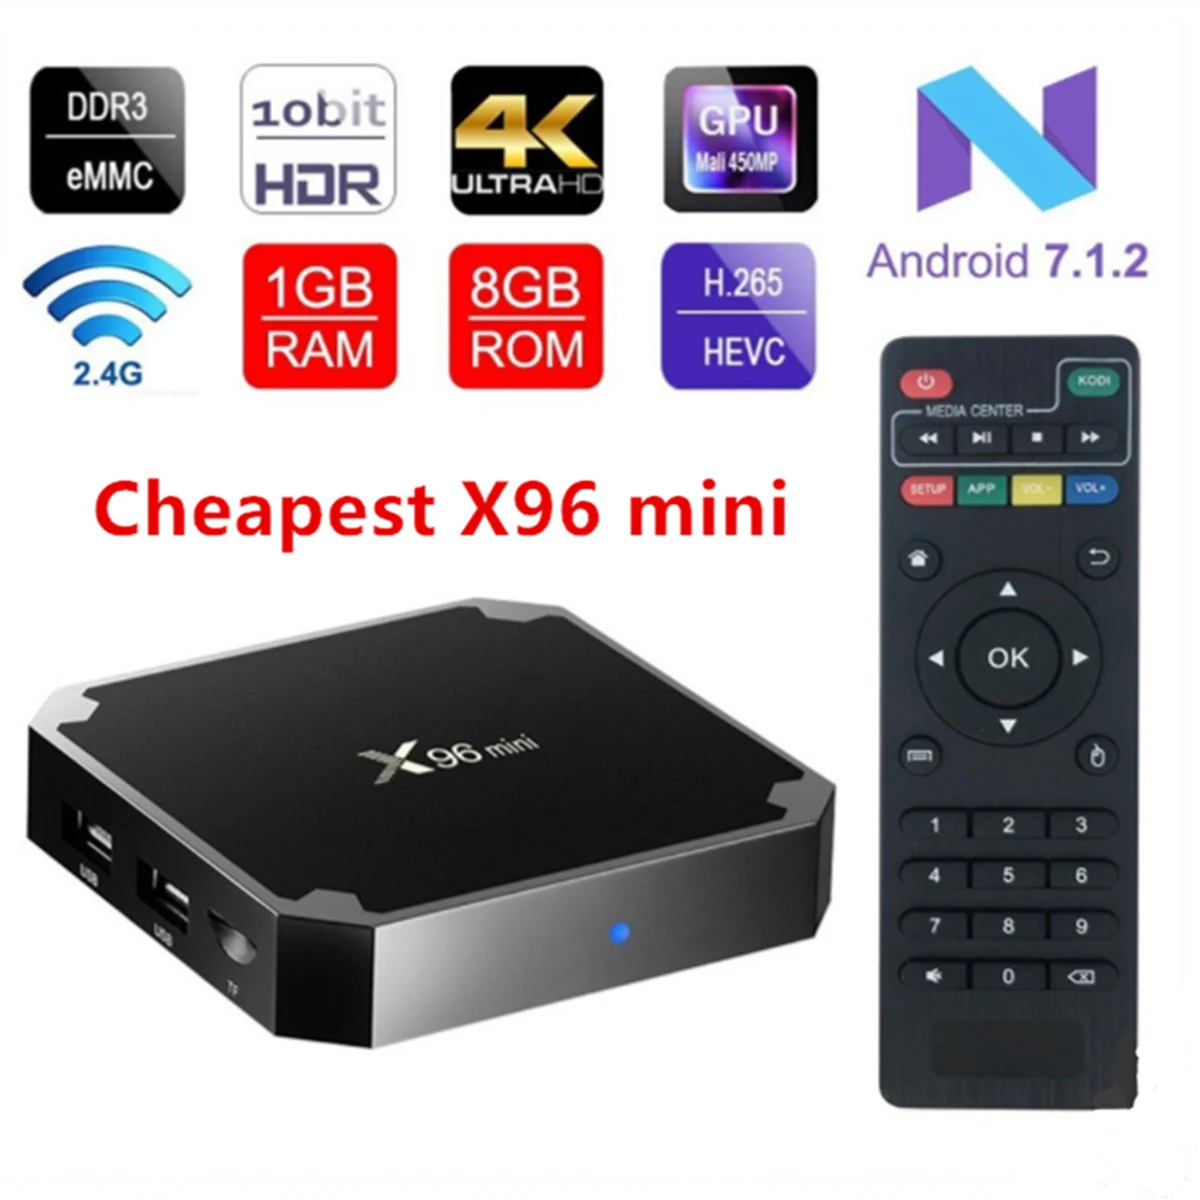 

X96 mini Android 7.1 Amlogic S905W 1gb 8gb 2.4g wifi Smart Tv box 2gb/16gb HDMI 2.0 Streaming Quad Core HD 4K Media Player